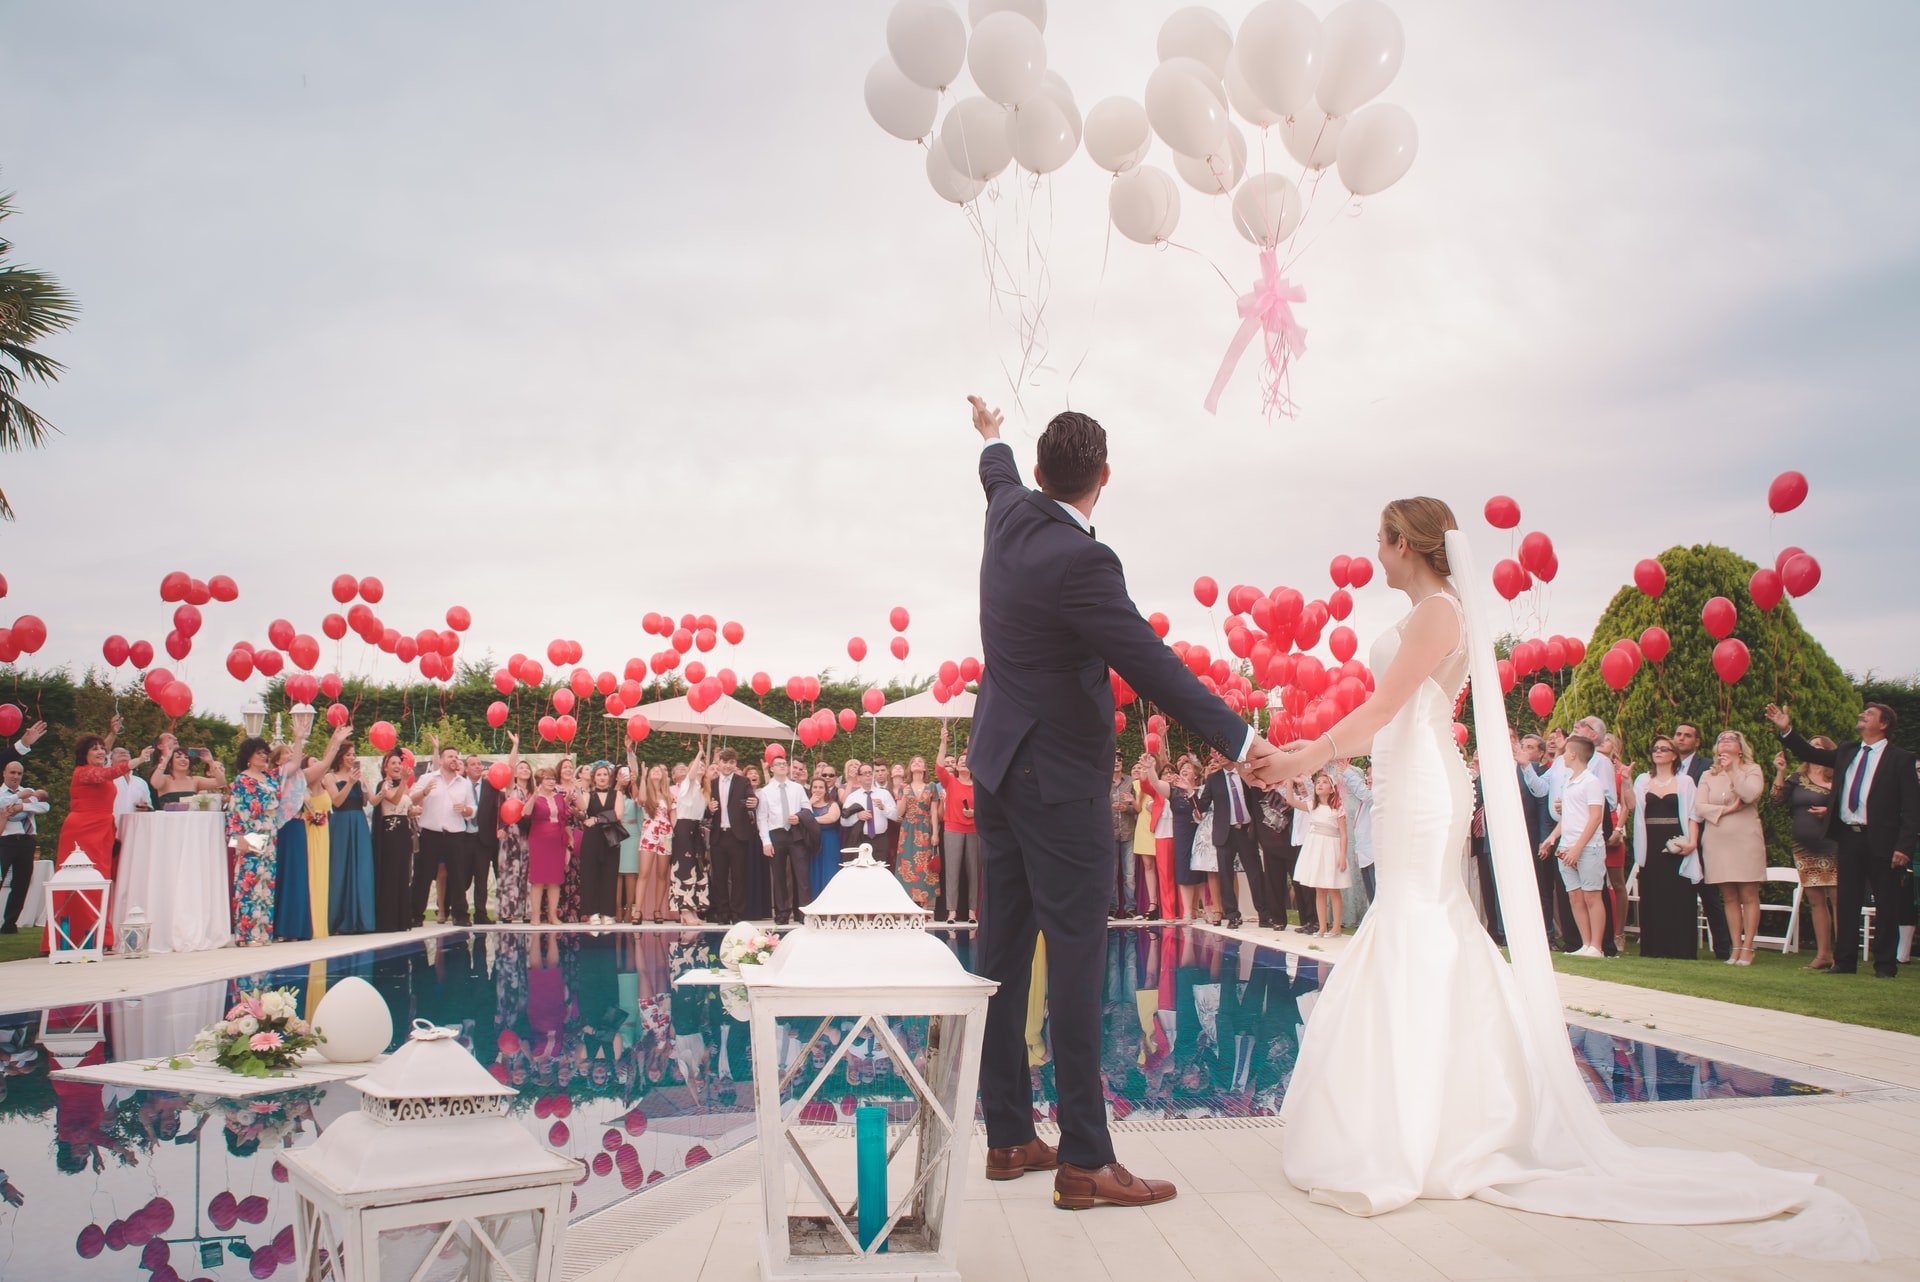 wesele w karnawale: wypuszczanie balonów z helem